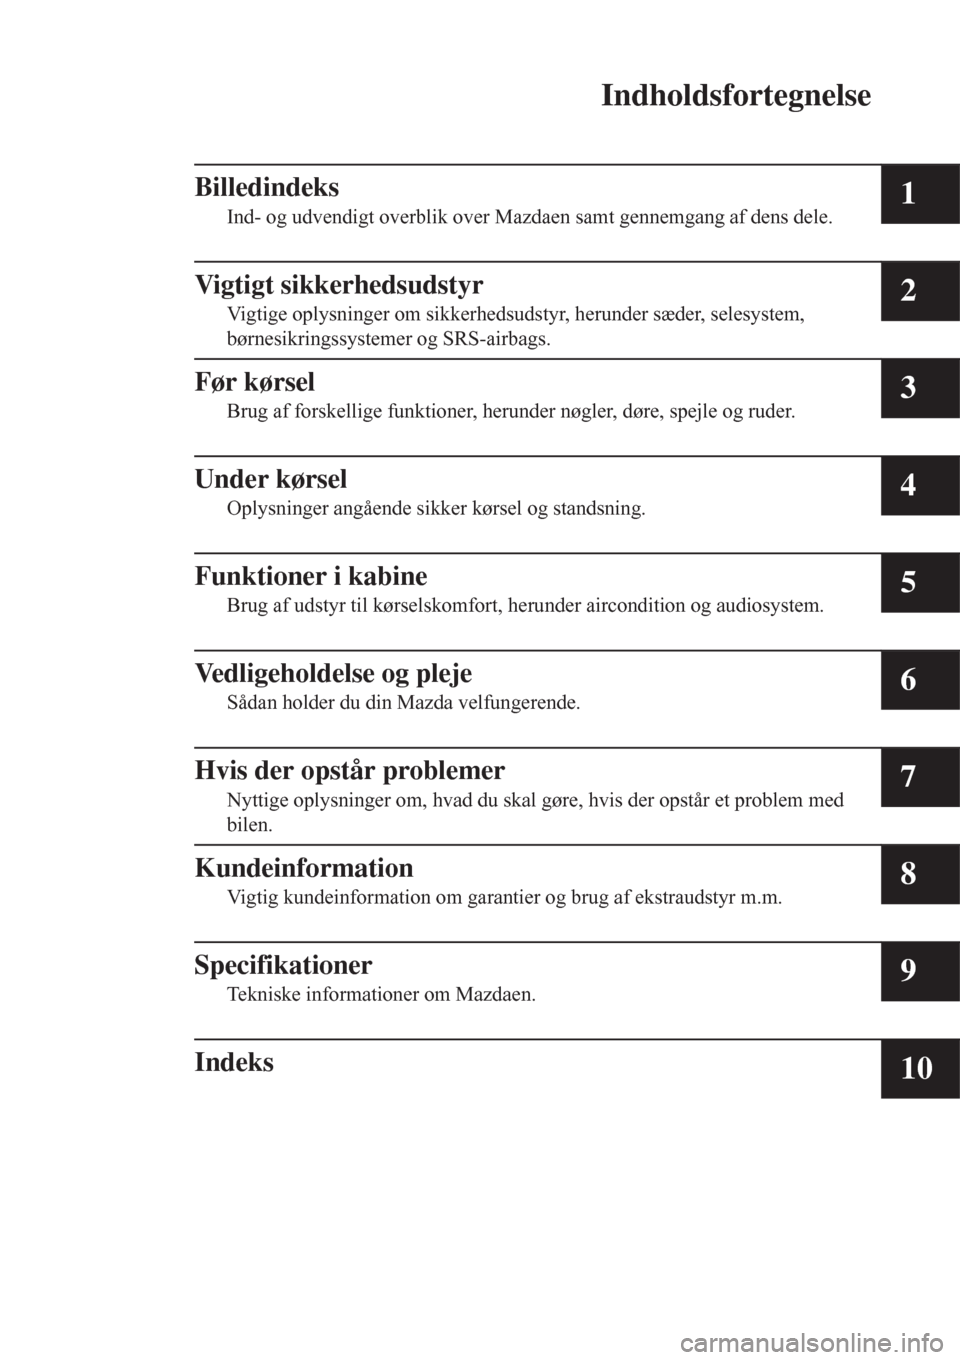 MAZDA MODEL CX-3 2016   Instruktionsbog (in Danish)  Indholdsfortegnelse
Billedindeks
Ind- og udvendigt overblik over Mazdaen samt gennemgang af dens dele.1
Vigtigt sikkerhedsudstyr
Vigtige oplysninger om sikkerhedsudstyr, herunder sæder, selesystem,
b